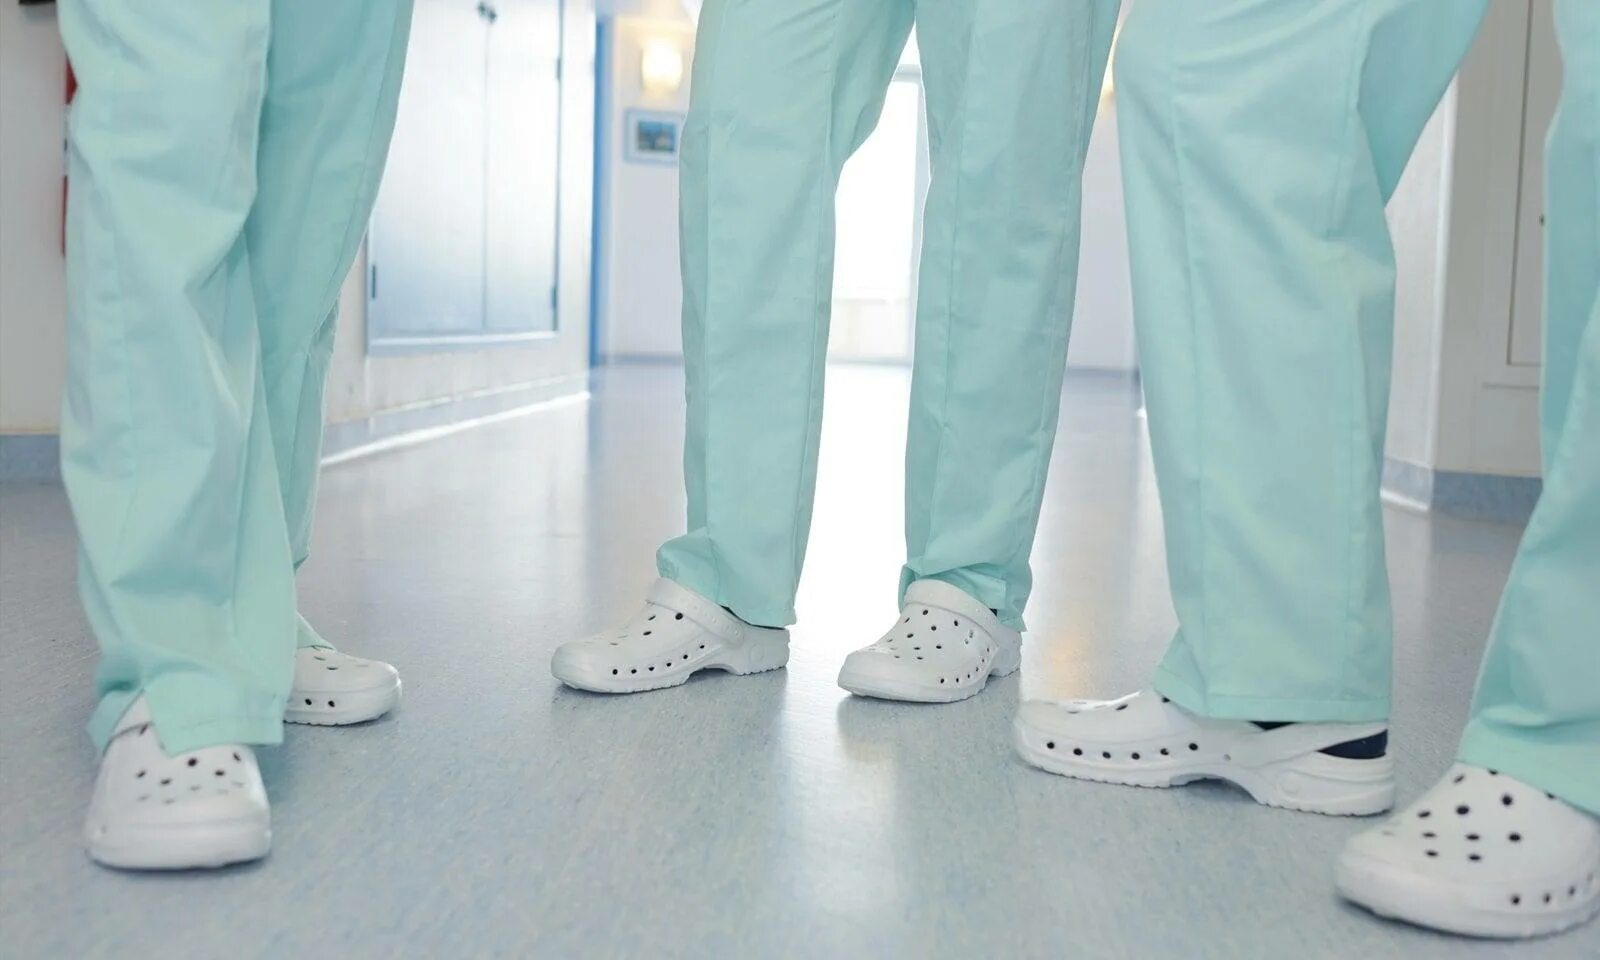 Стопы какой врач. Обувь для медицинского персонала. Обувь доктор. Обувь для больницы для медработников. Обувь для хирургов.